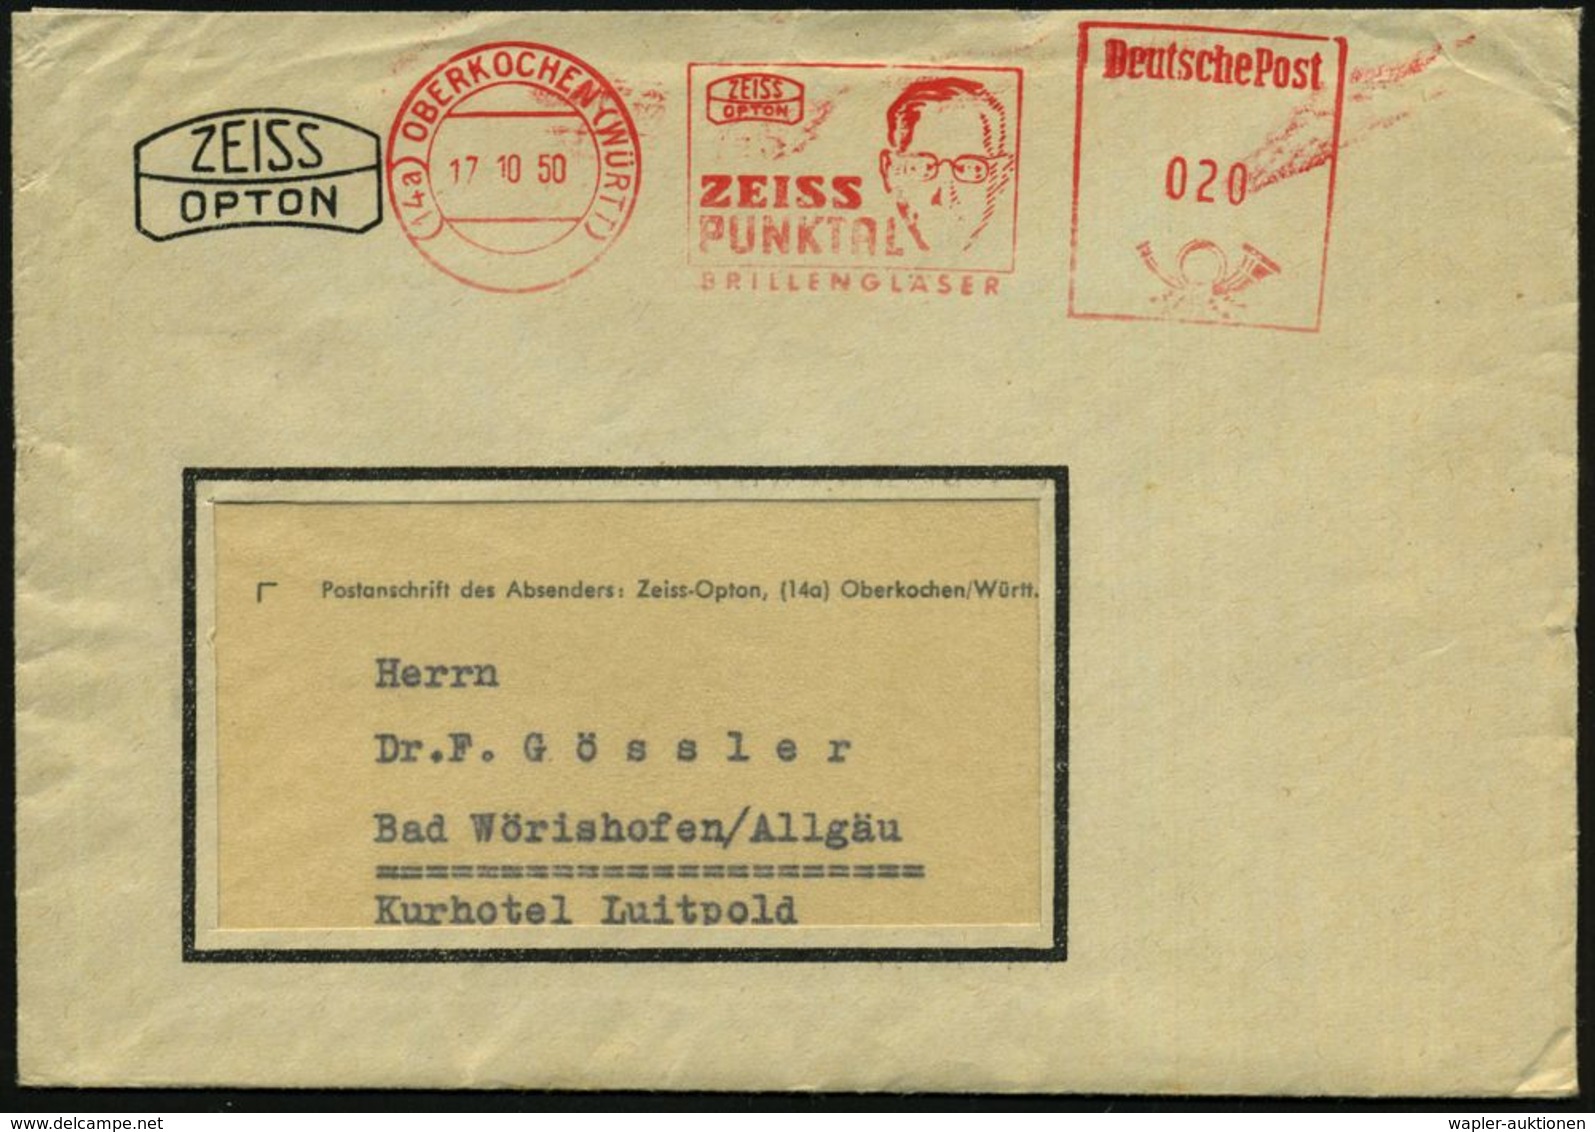 (14a) OBERKOCHEN (WÜRTT)/ ZEISS/ OPTON/ ZEISS/ PUNKTAL/ BRILLENGLÄSER 1950 (17.10.) AFS = Kopf Mit Brille U. Firmen-Logo - Maladies